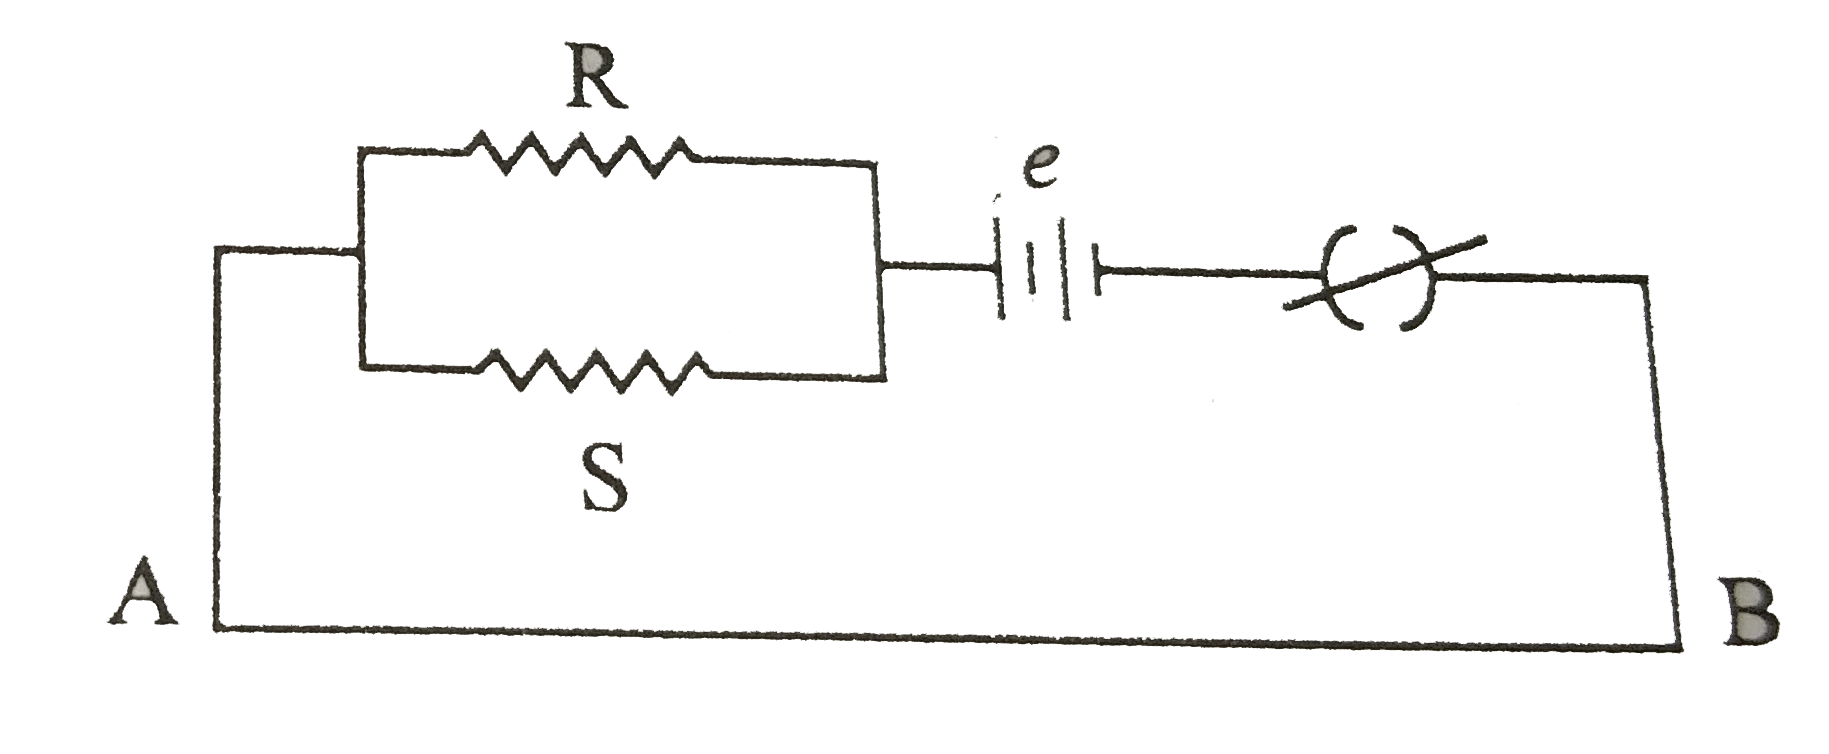 चित्र में एक पोटेशियोमीटर दर्शाया गया है जिसमे एक 2.0V और आंतरिक प्रतिरोध 0.40Omega का कोई सेल, पोटेशियोमीटर के प्रतिरोधक तार AB पर वोल्टता पात बनाए रखता है। कोई मानक सेल जो 1.02V  का अचर विद्युत वाहक बल बनाए रखता है (कुछ mA की बहुत सामान्य धाराओं के लिए) तार की 67.3cm लंबाई पर संतुलन बिंदु देता है। मानक सेल से अति न्यून धारा लेना सुनिश्चित करने के लिए इसके साथ परिपथ में श्रेणी 600kOmega का एक अति उच्च प्रतिरोध इसके साथ संबद्ध किया जाता है, जिसके संतुलन बिंदु प्राप्त होने के निकट लघुपथित कर दिया जाता है। इसके बाद मानक सेल को किसी अज्ञात विद्युत वाहक बल epsilon के सेल से प्रतिस्थापित कर दिया जाता है जिससे संतुलन बिंदु तार की 82.3cm लंबाई पर प्राप्त होता है।      क्या यह परिपथ कुछ mV की कोटि के अत्यल्प विद्युत वाहक बलों (जैसे कि किसी प्रारूपी तापवैद्युत युग्म का विद्युत वाहक बल) के निर्धारण में सफल होगी? यदि नहीं तो आप इसमें किस प्रकार संशोधन करेंगे?